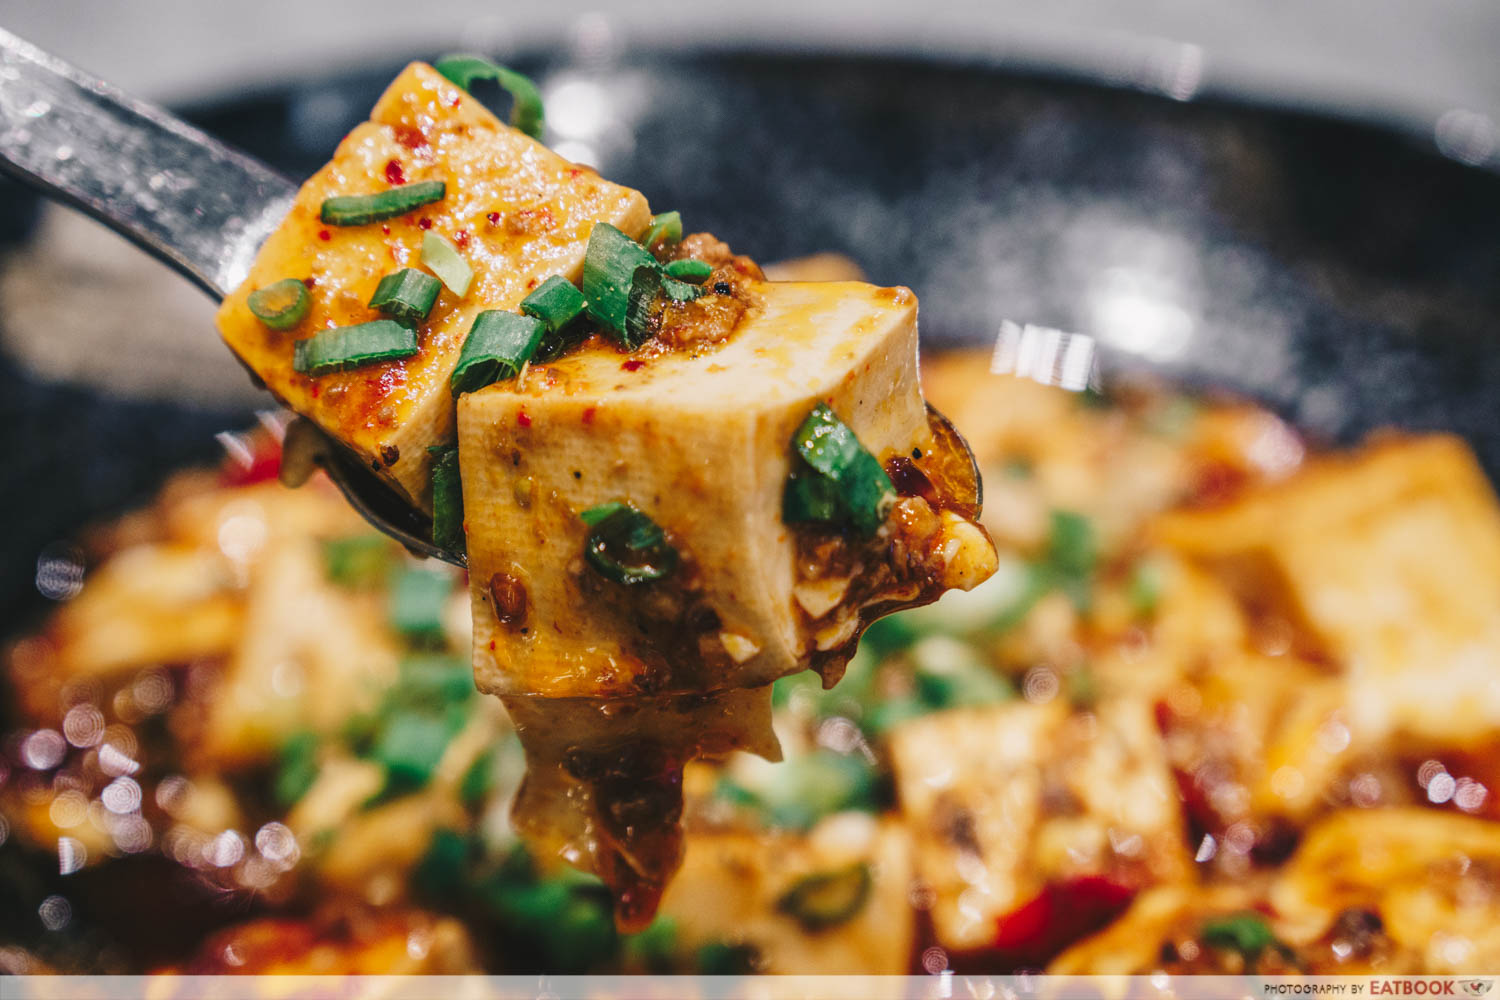 Shang Social - Jewel mapo tofu